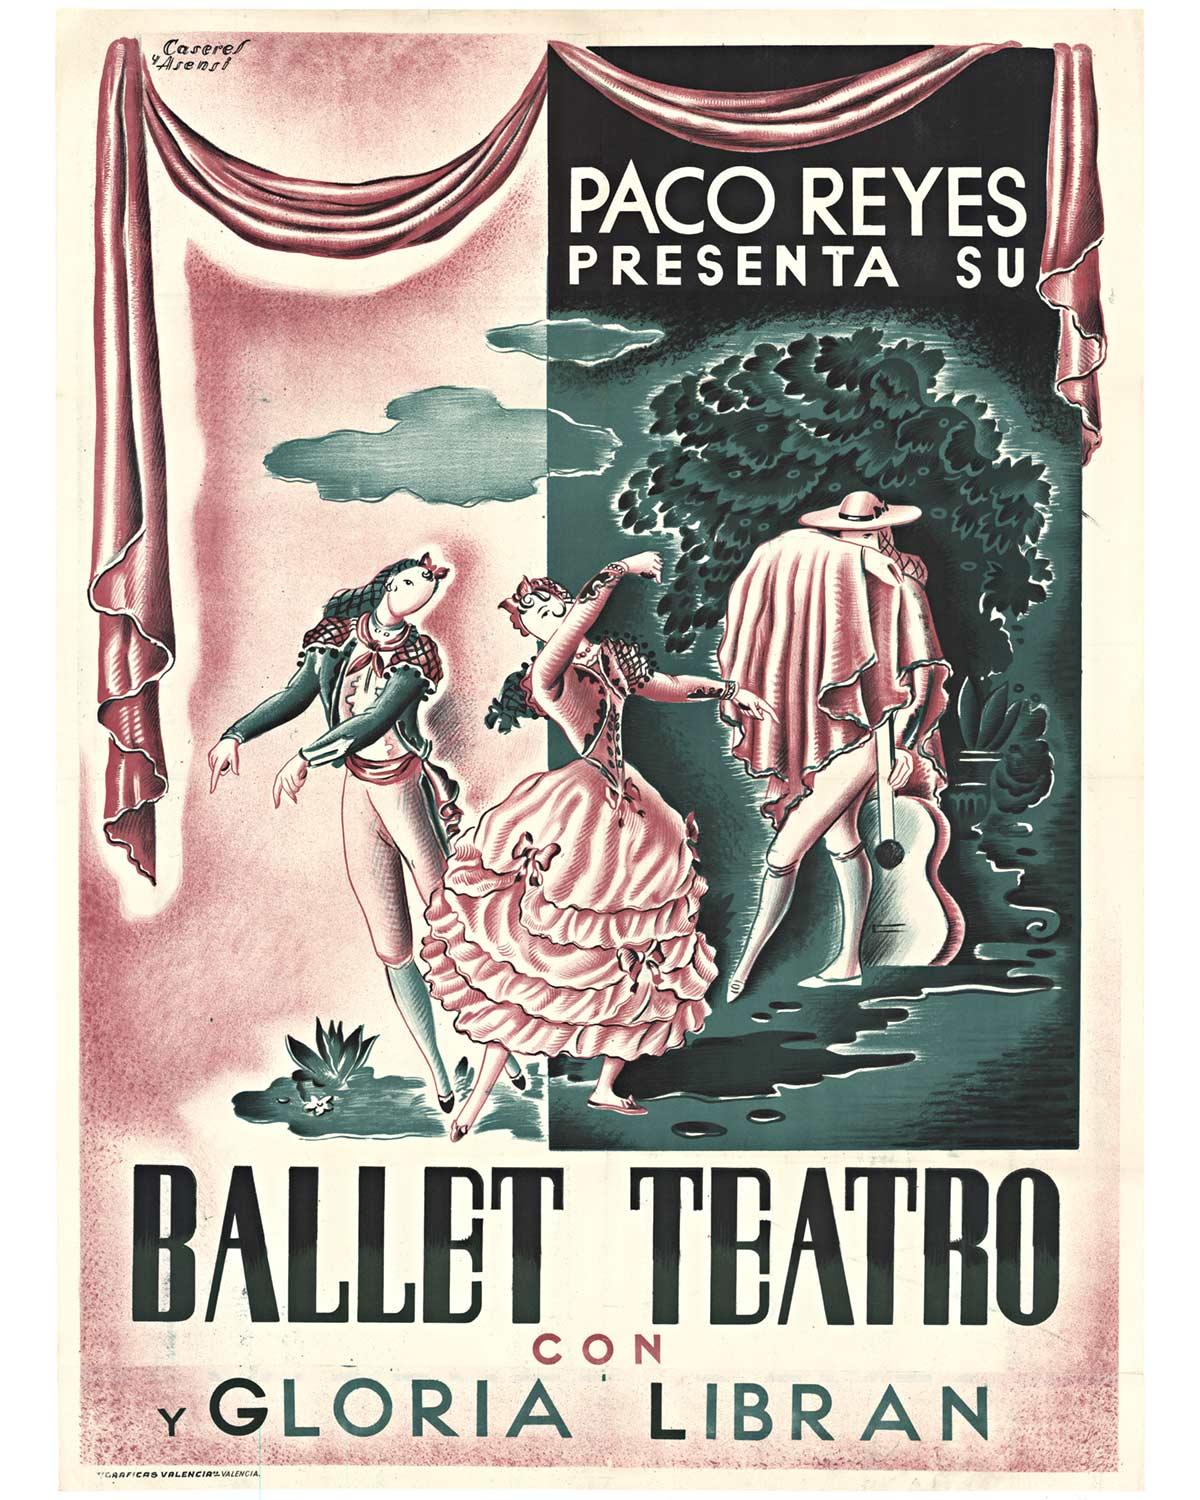 Rafael Caseres Figurative Print - Original Paco Reyes Presenta Su Ballet Teatro con y Gloria Libran vintage poster